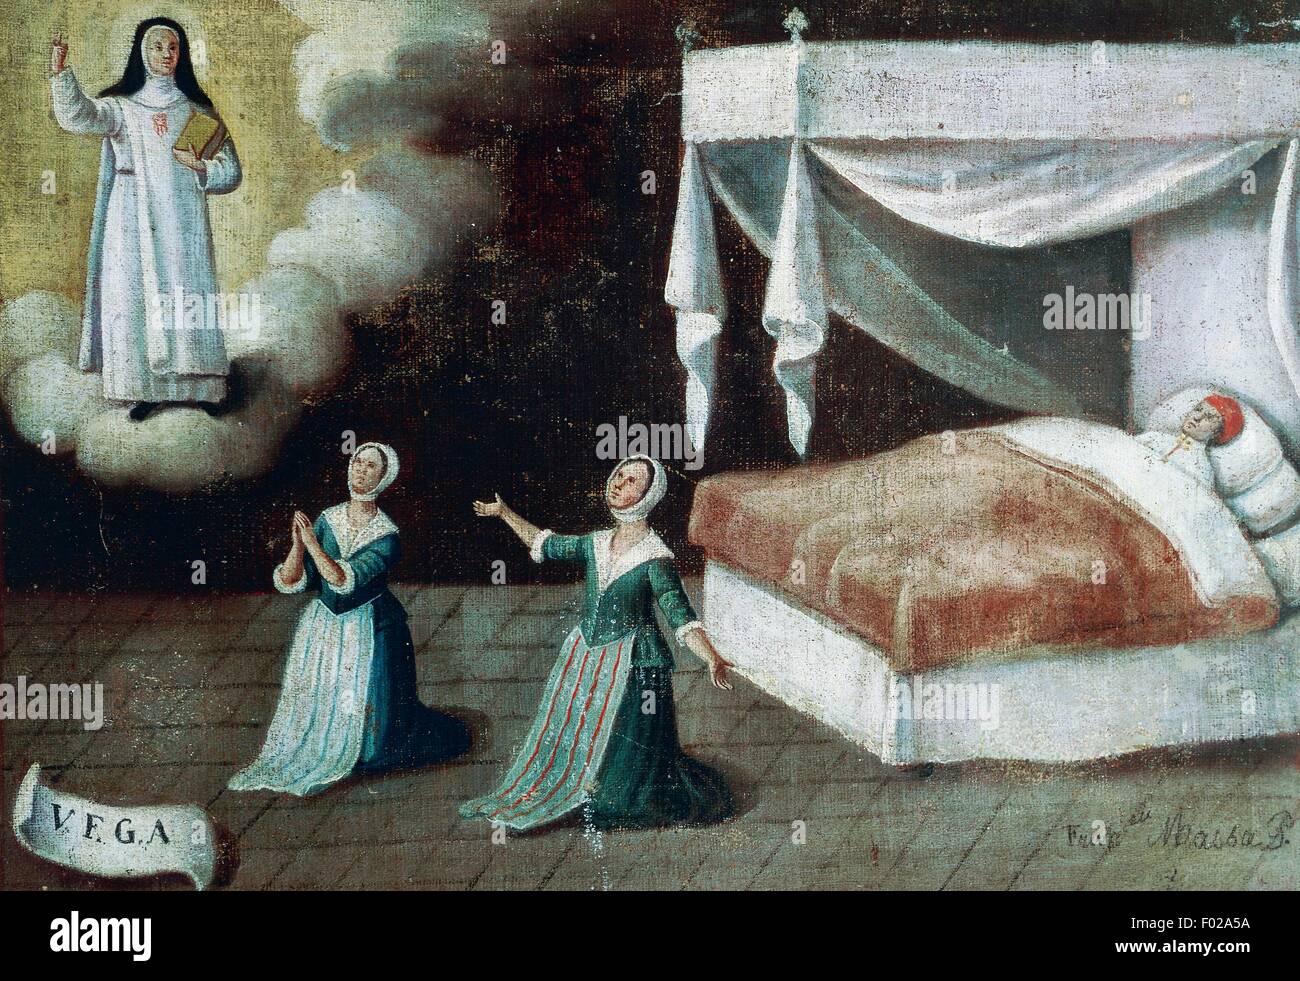 Homme malade au lit avec des femmes à genoux, ex voto, Italie. Banque D'Images